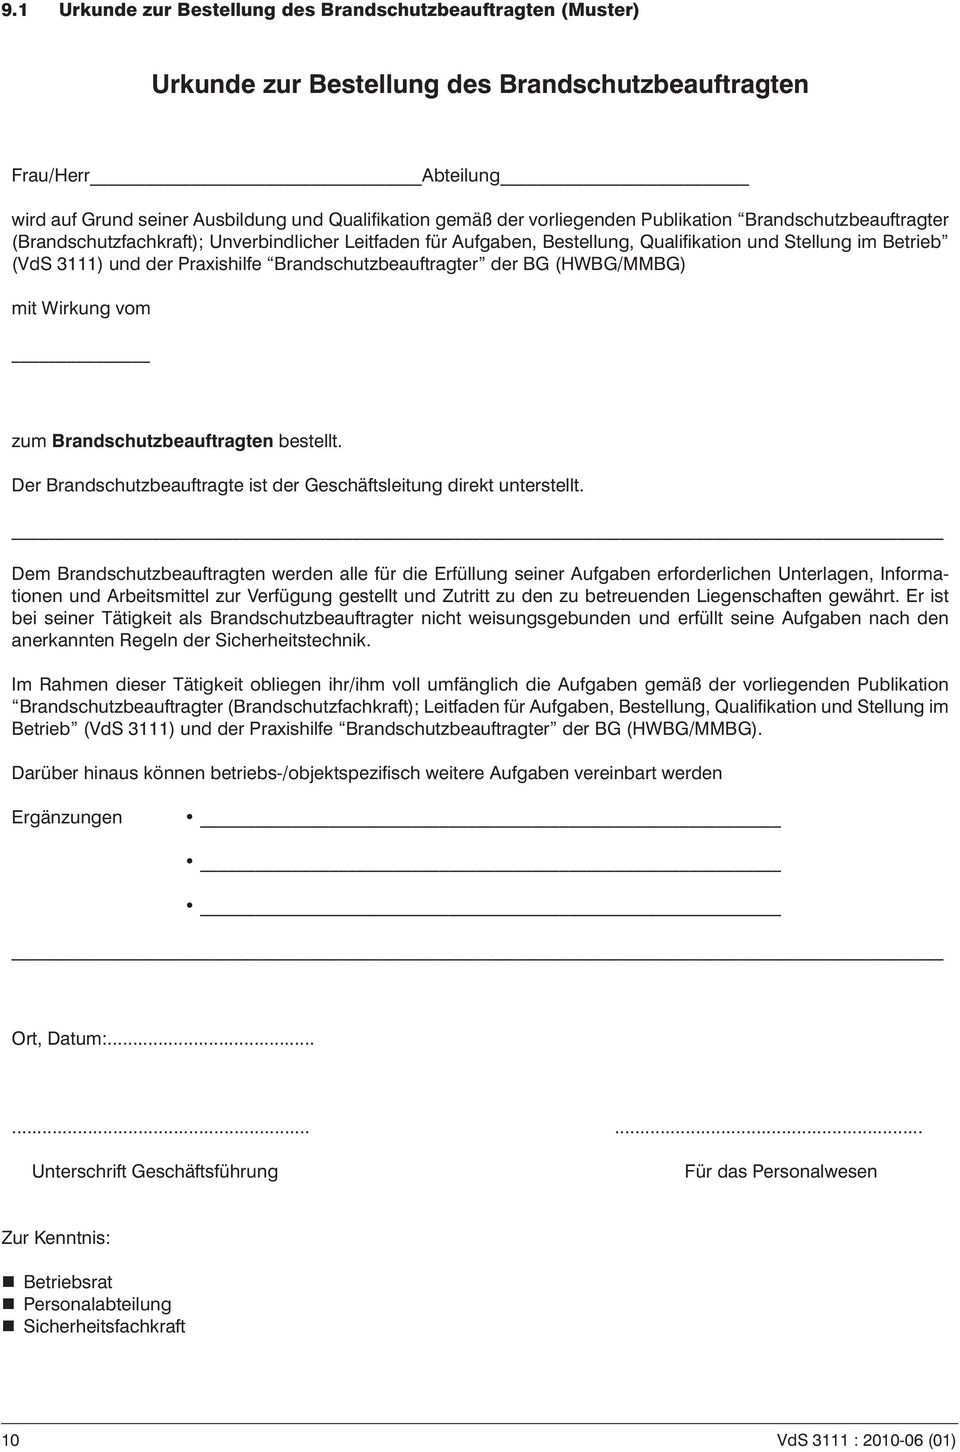 Brandschutzbeauftragter Fachkraft Fur Brandschutz Pdf Kostenfreier Download